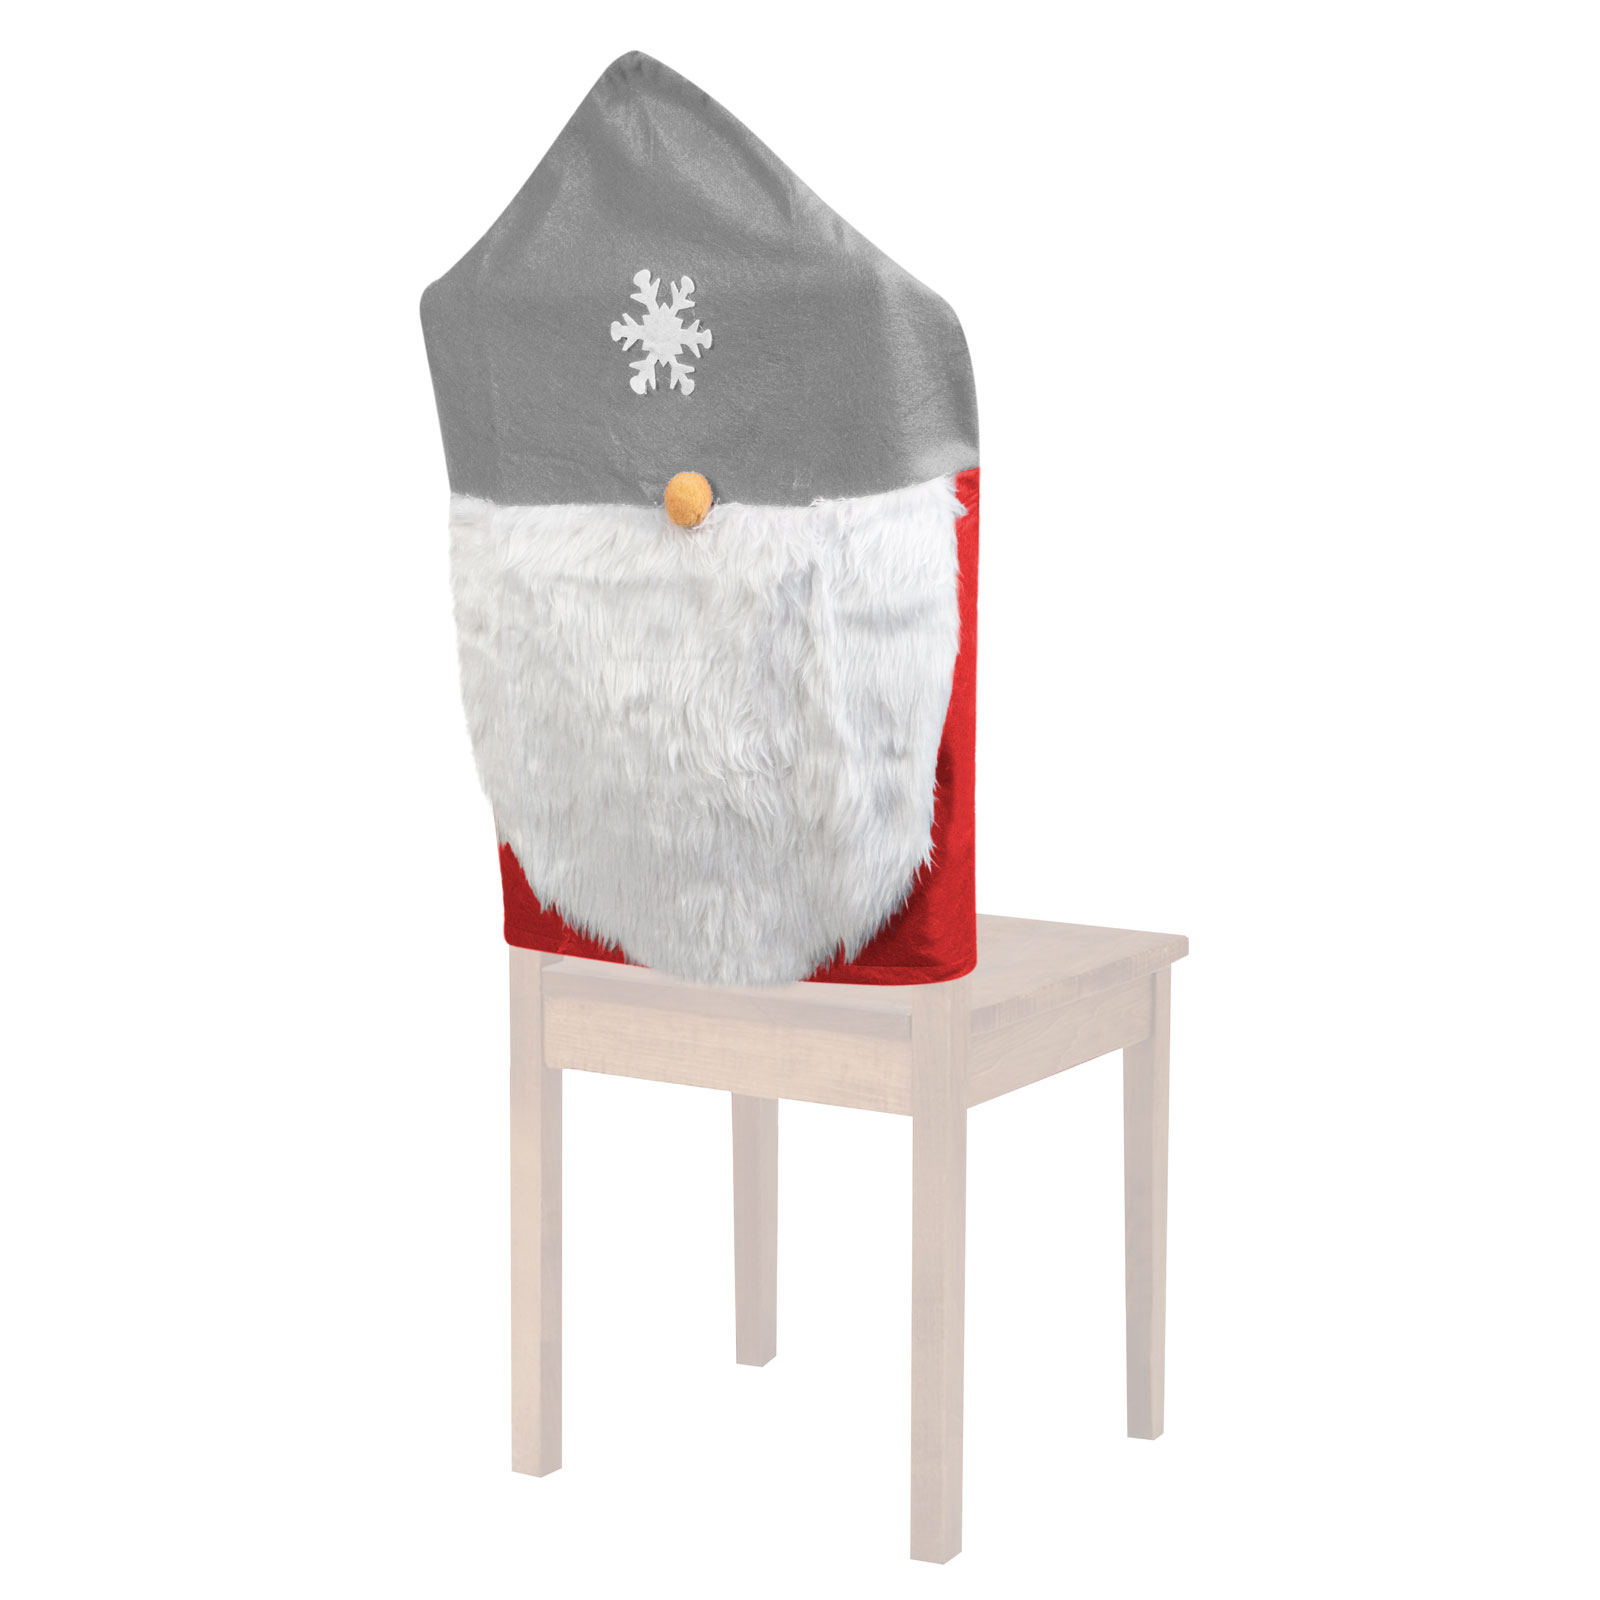 Decorațiuni pentru scaune - Elfi - 50 x 60 cm - gri / roșu thumb